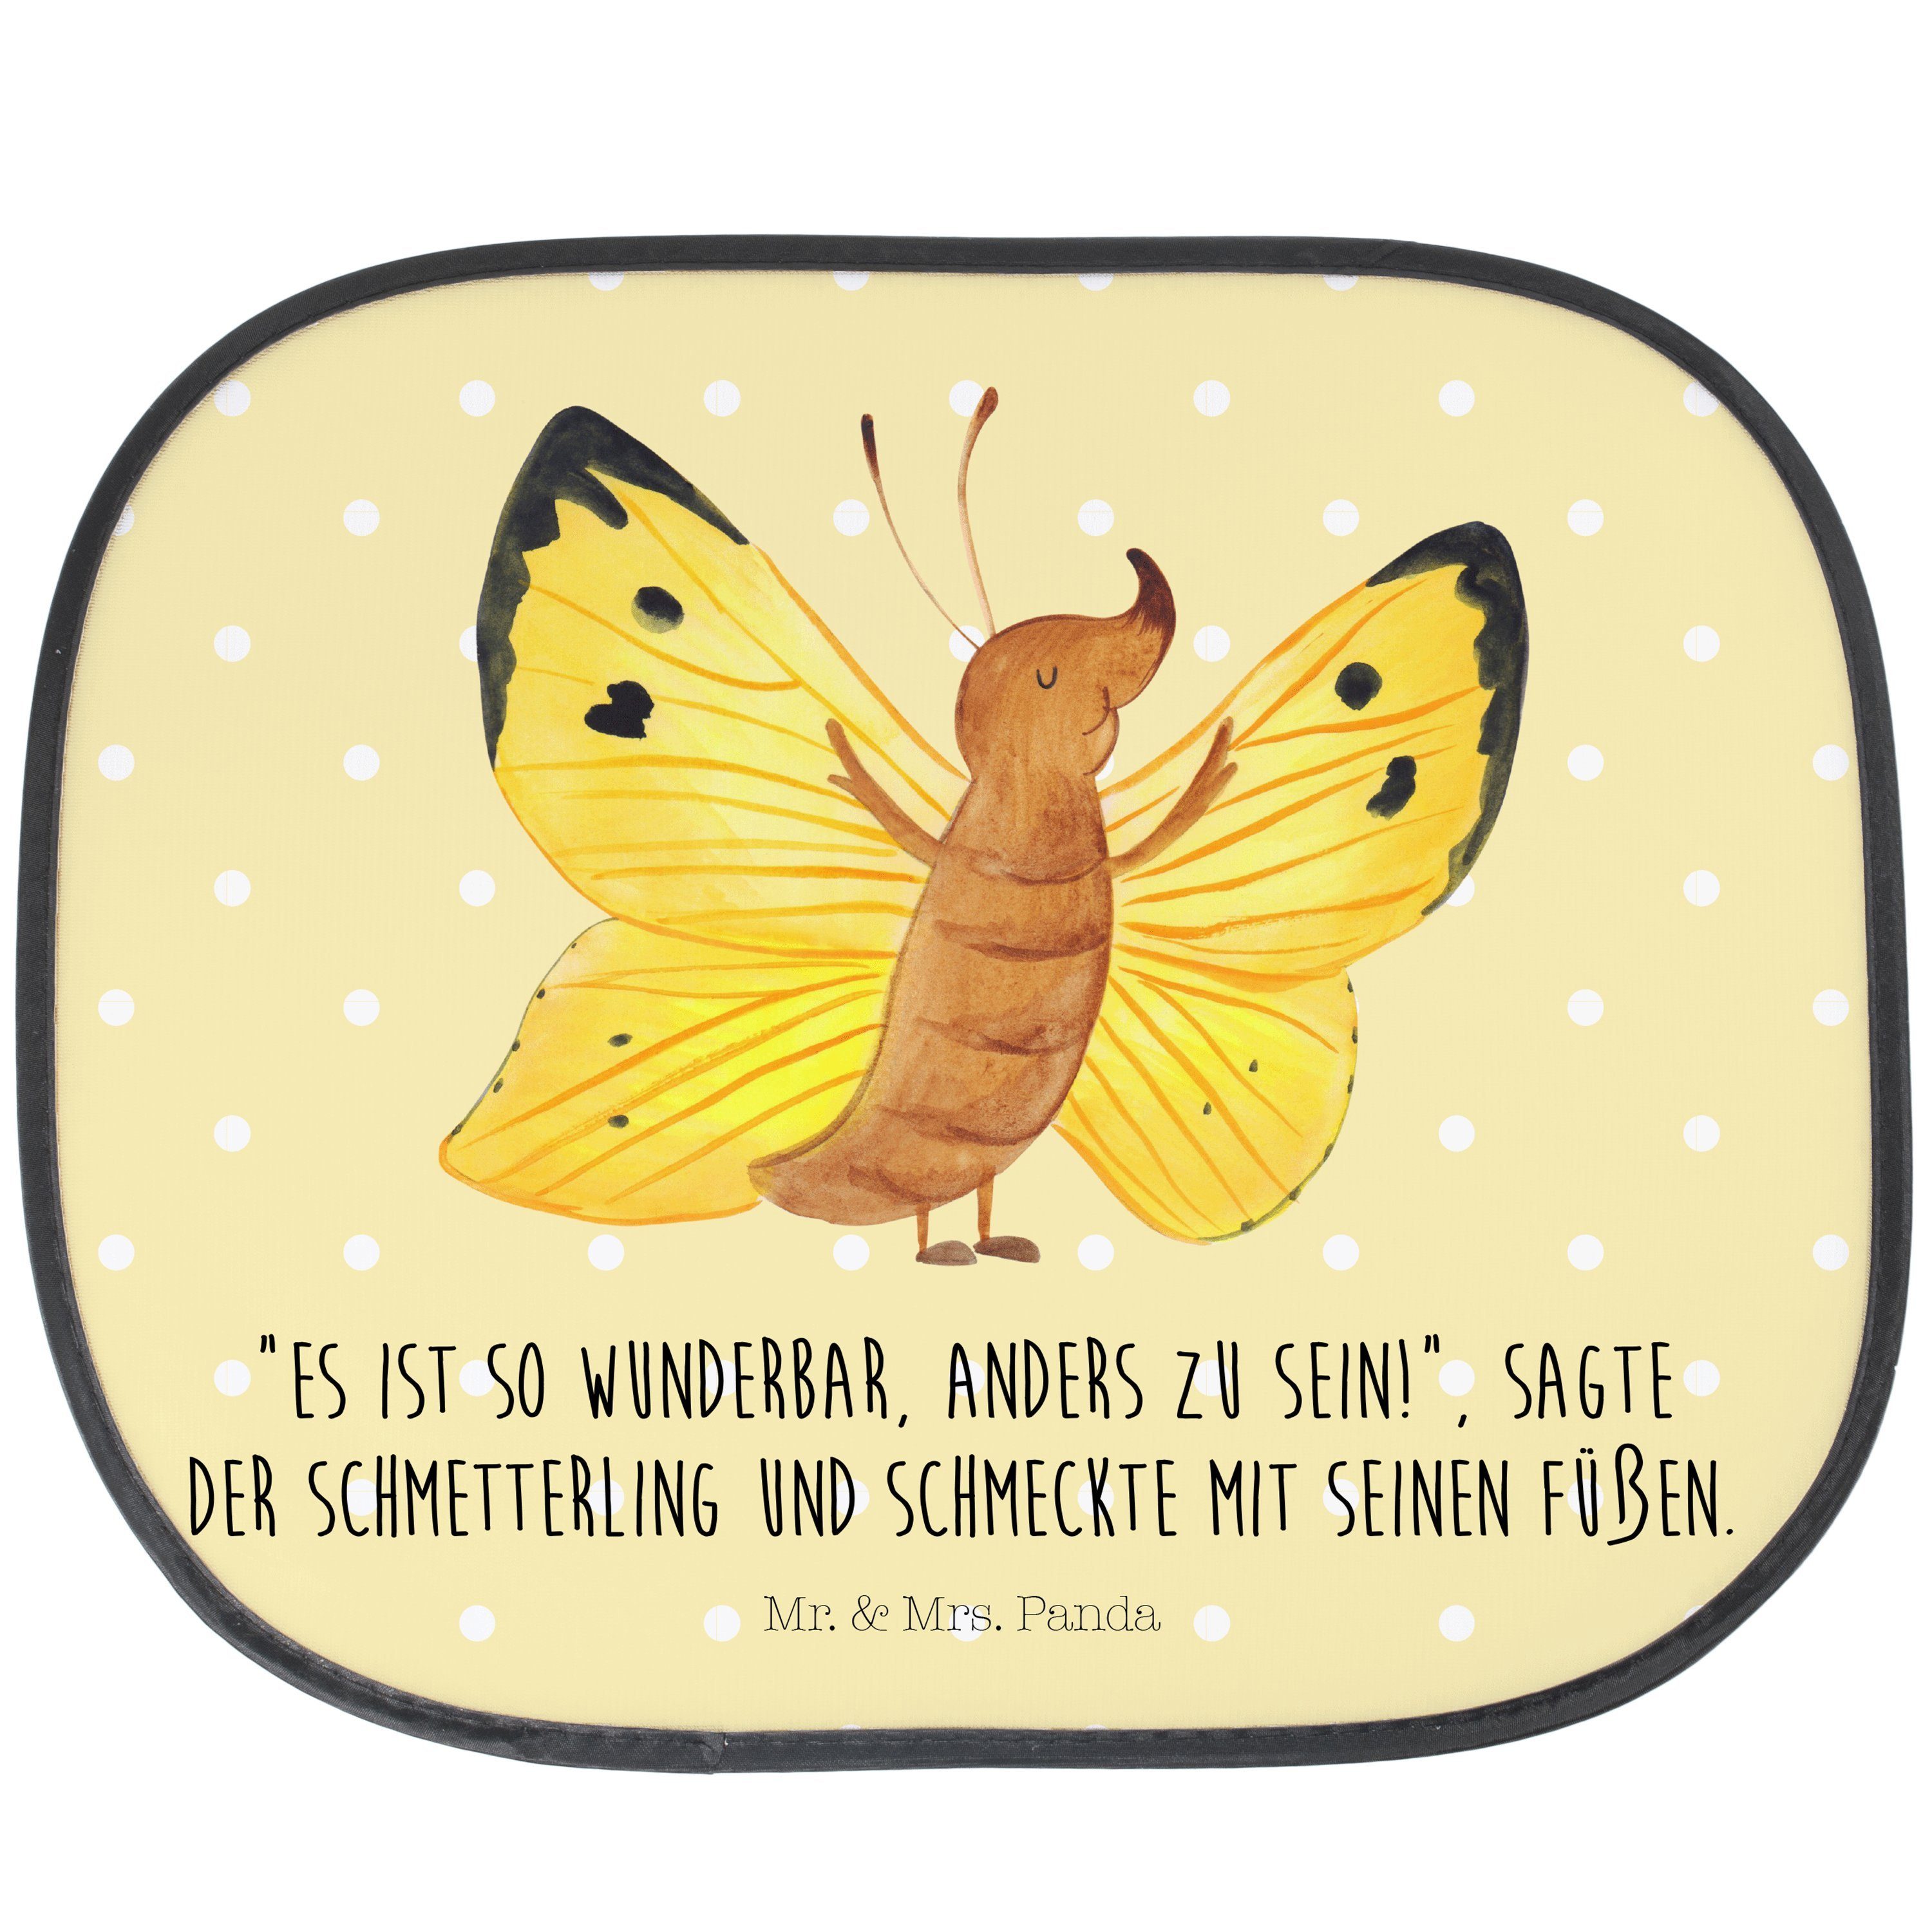 Sonnenschutz Schmetterling Zitronenfalter - Gelb Pastell - Geschenk, lustige Sprüc, Mr. & Mrs. Panda, Seidenmatt